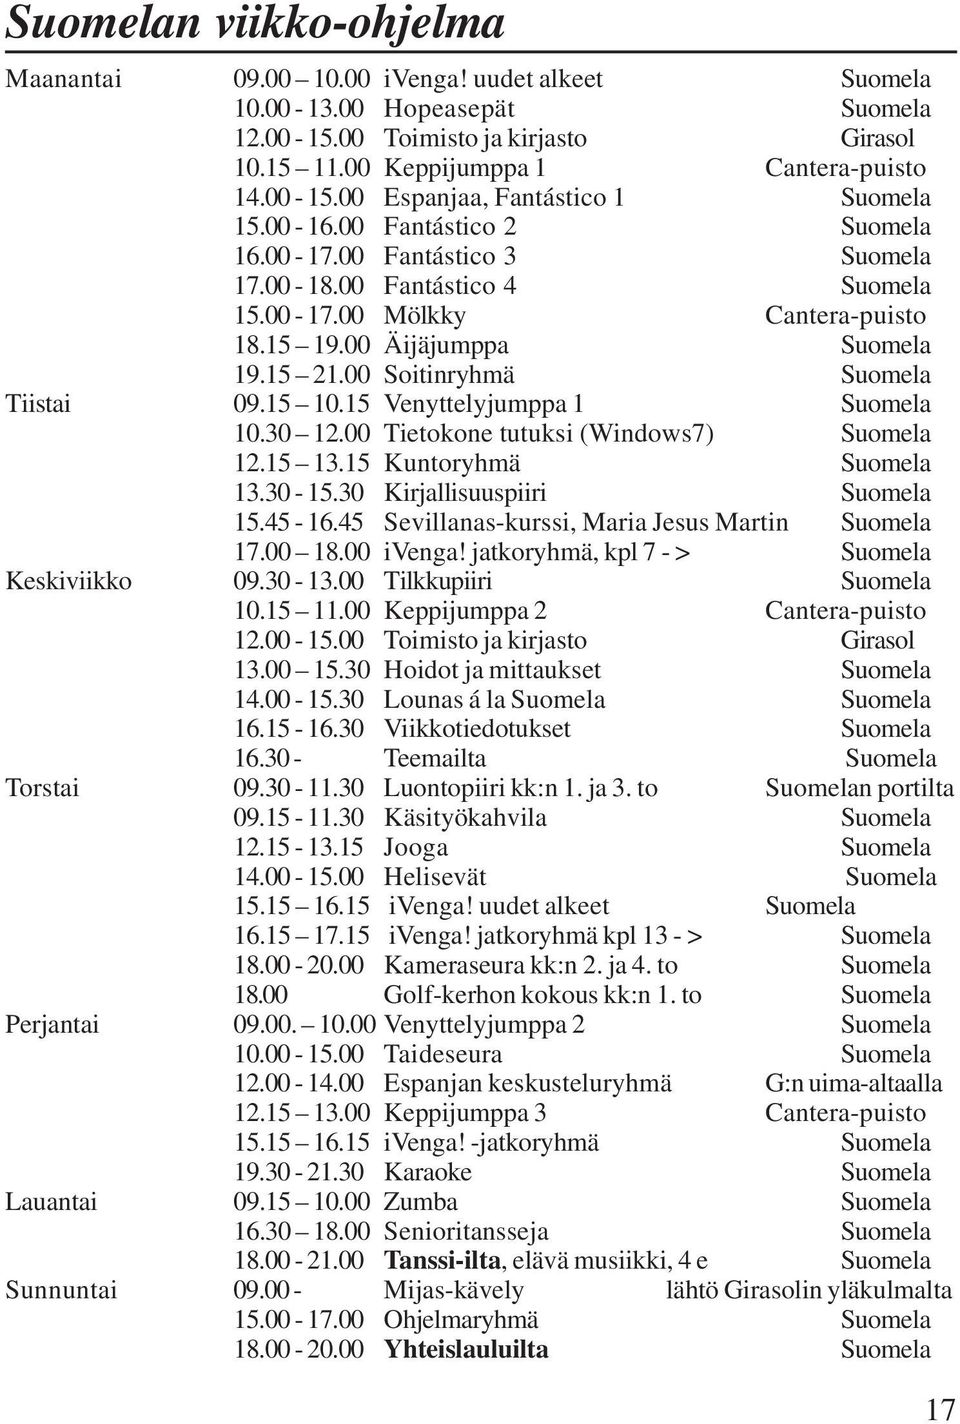 00 Soitinryhmä Suomela Tiistai 09.15 10.15 Venyttelyjumppa 1 Suomela 10.30 12.00 Tietokone tutuksi (Windows7) Suomela 12.15 13.15 Kuntoryhmä Suomela 13.30-15.30 Kirjallisuuspiiri Suomela 15.45-16.